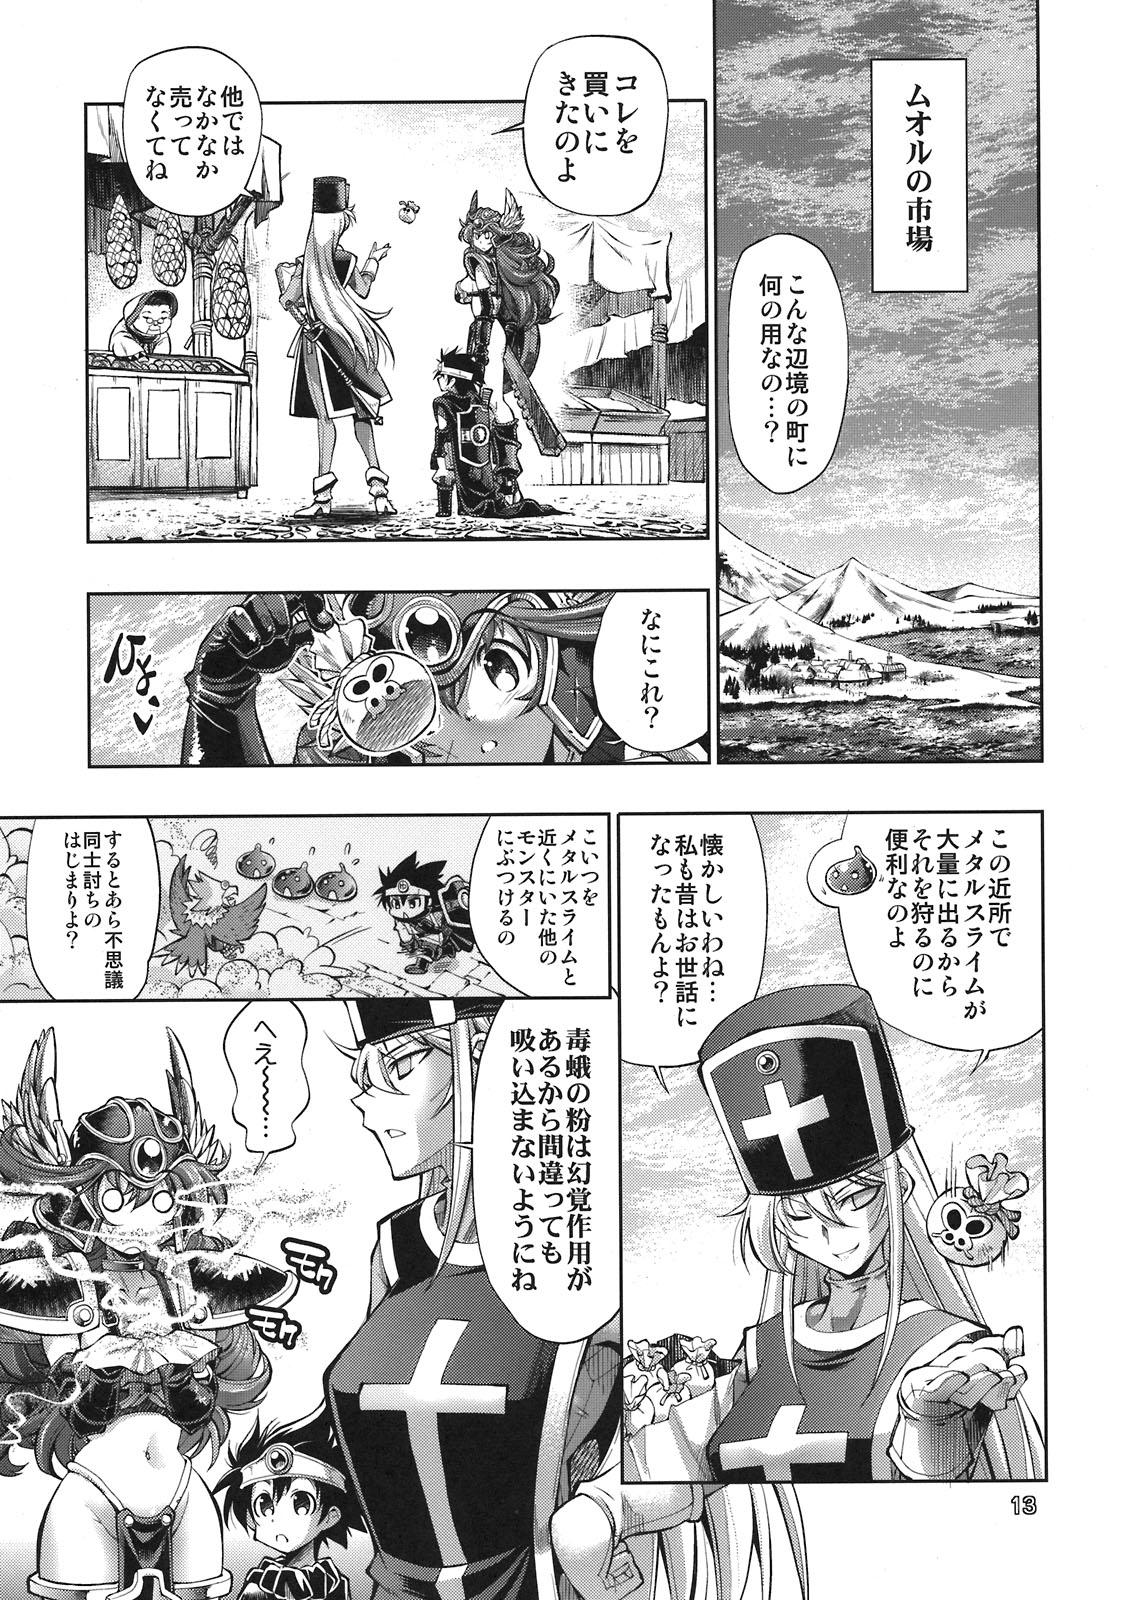 Swingers Yuusha no Chousenjou 4 Yoroichuu - Dragon quest iii Bang Bros - Page 10